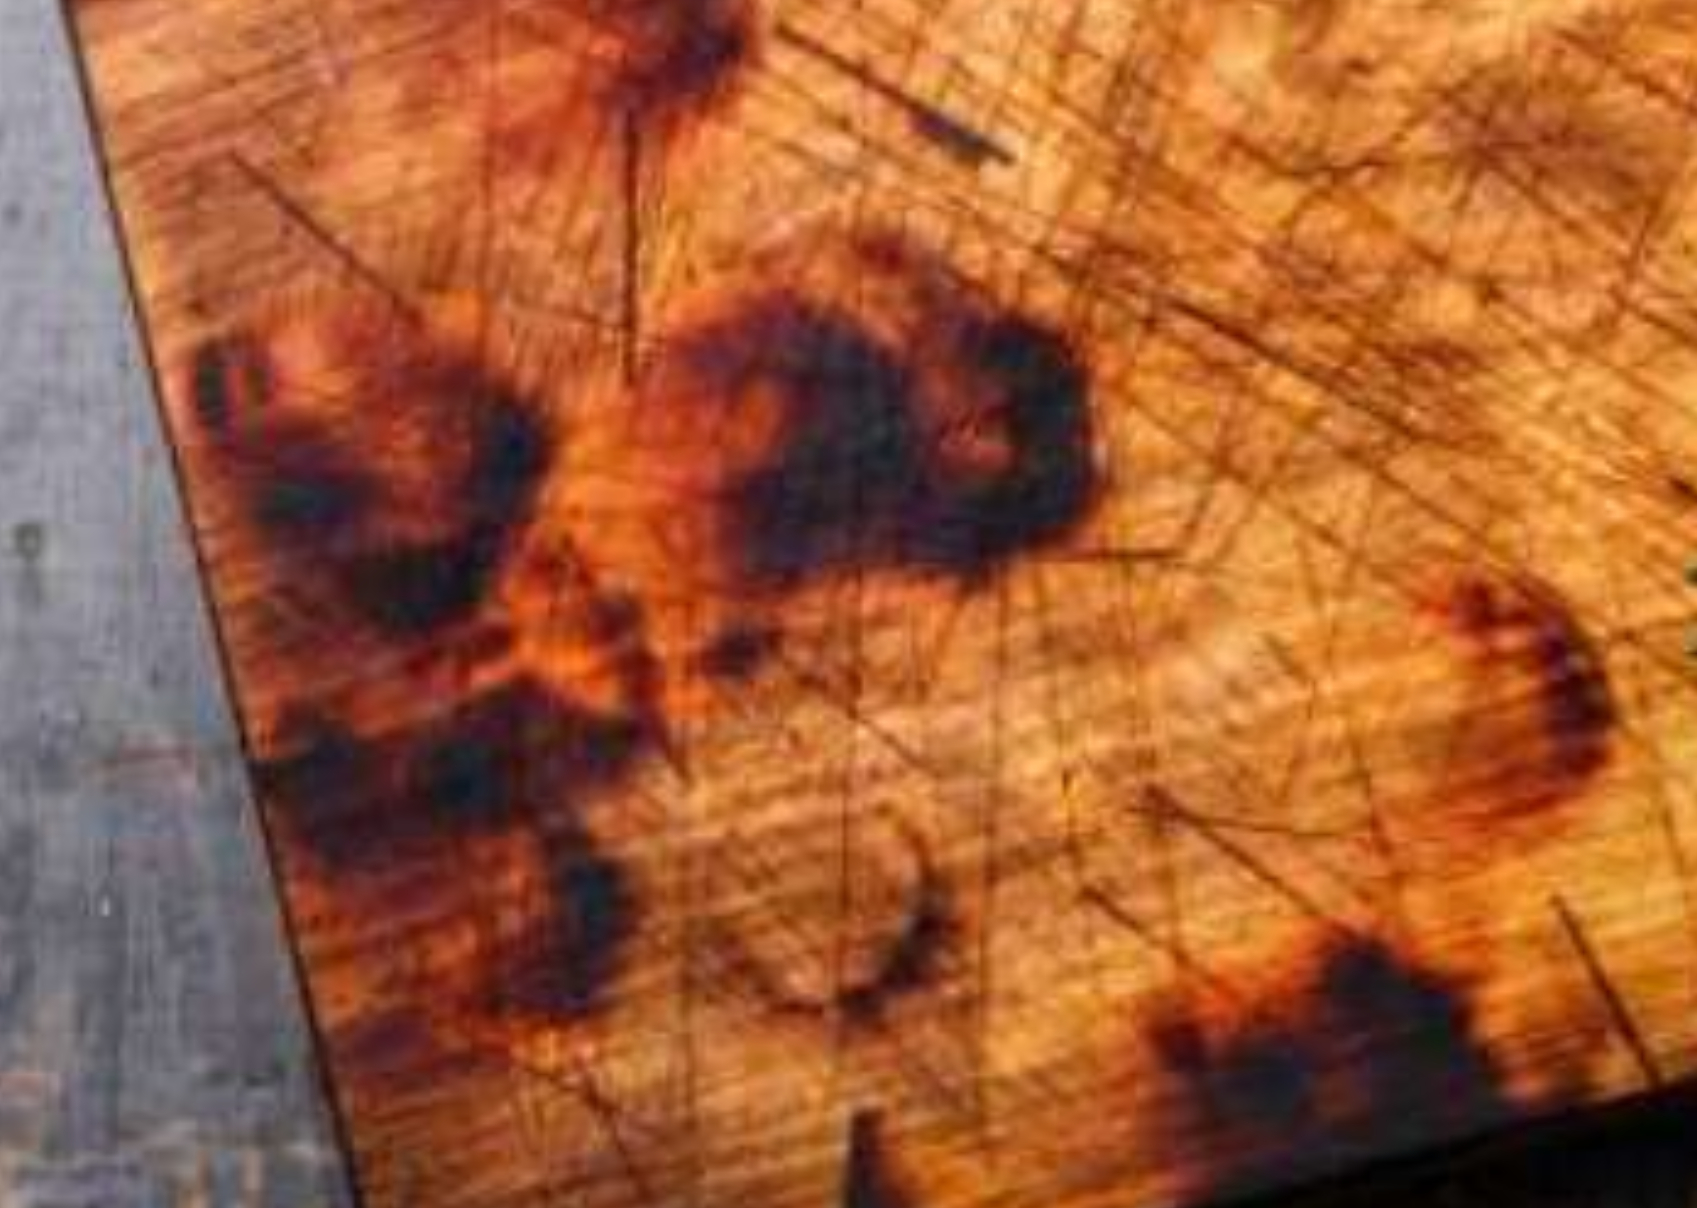 Μικρόβια μούχλα και άσχημες μυρωδιές στο ξύλο κοπής: Πως να το καθαρίσεις να το απολυμάνεις και να το κάνεις σαν καινούριο